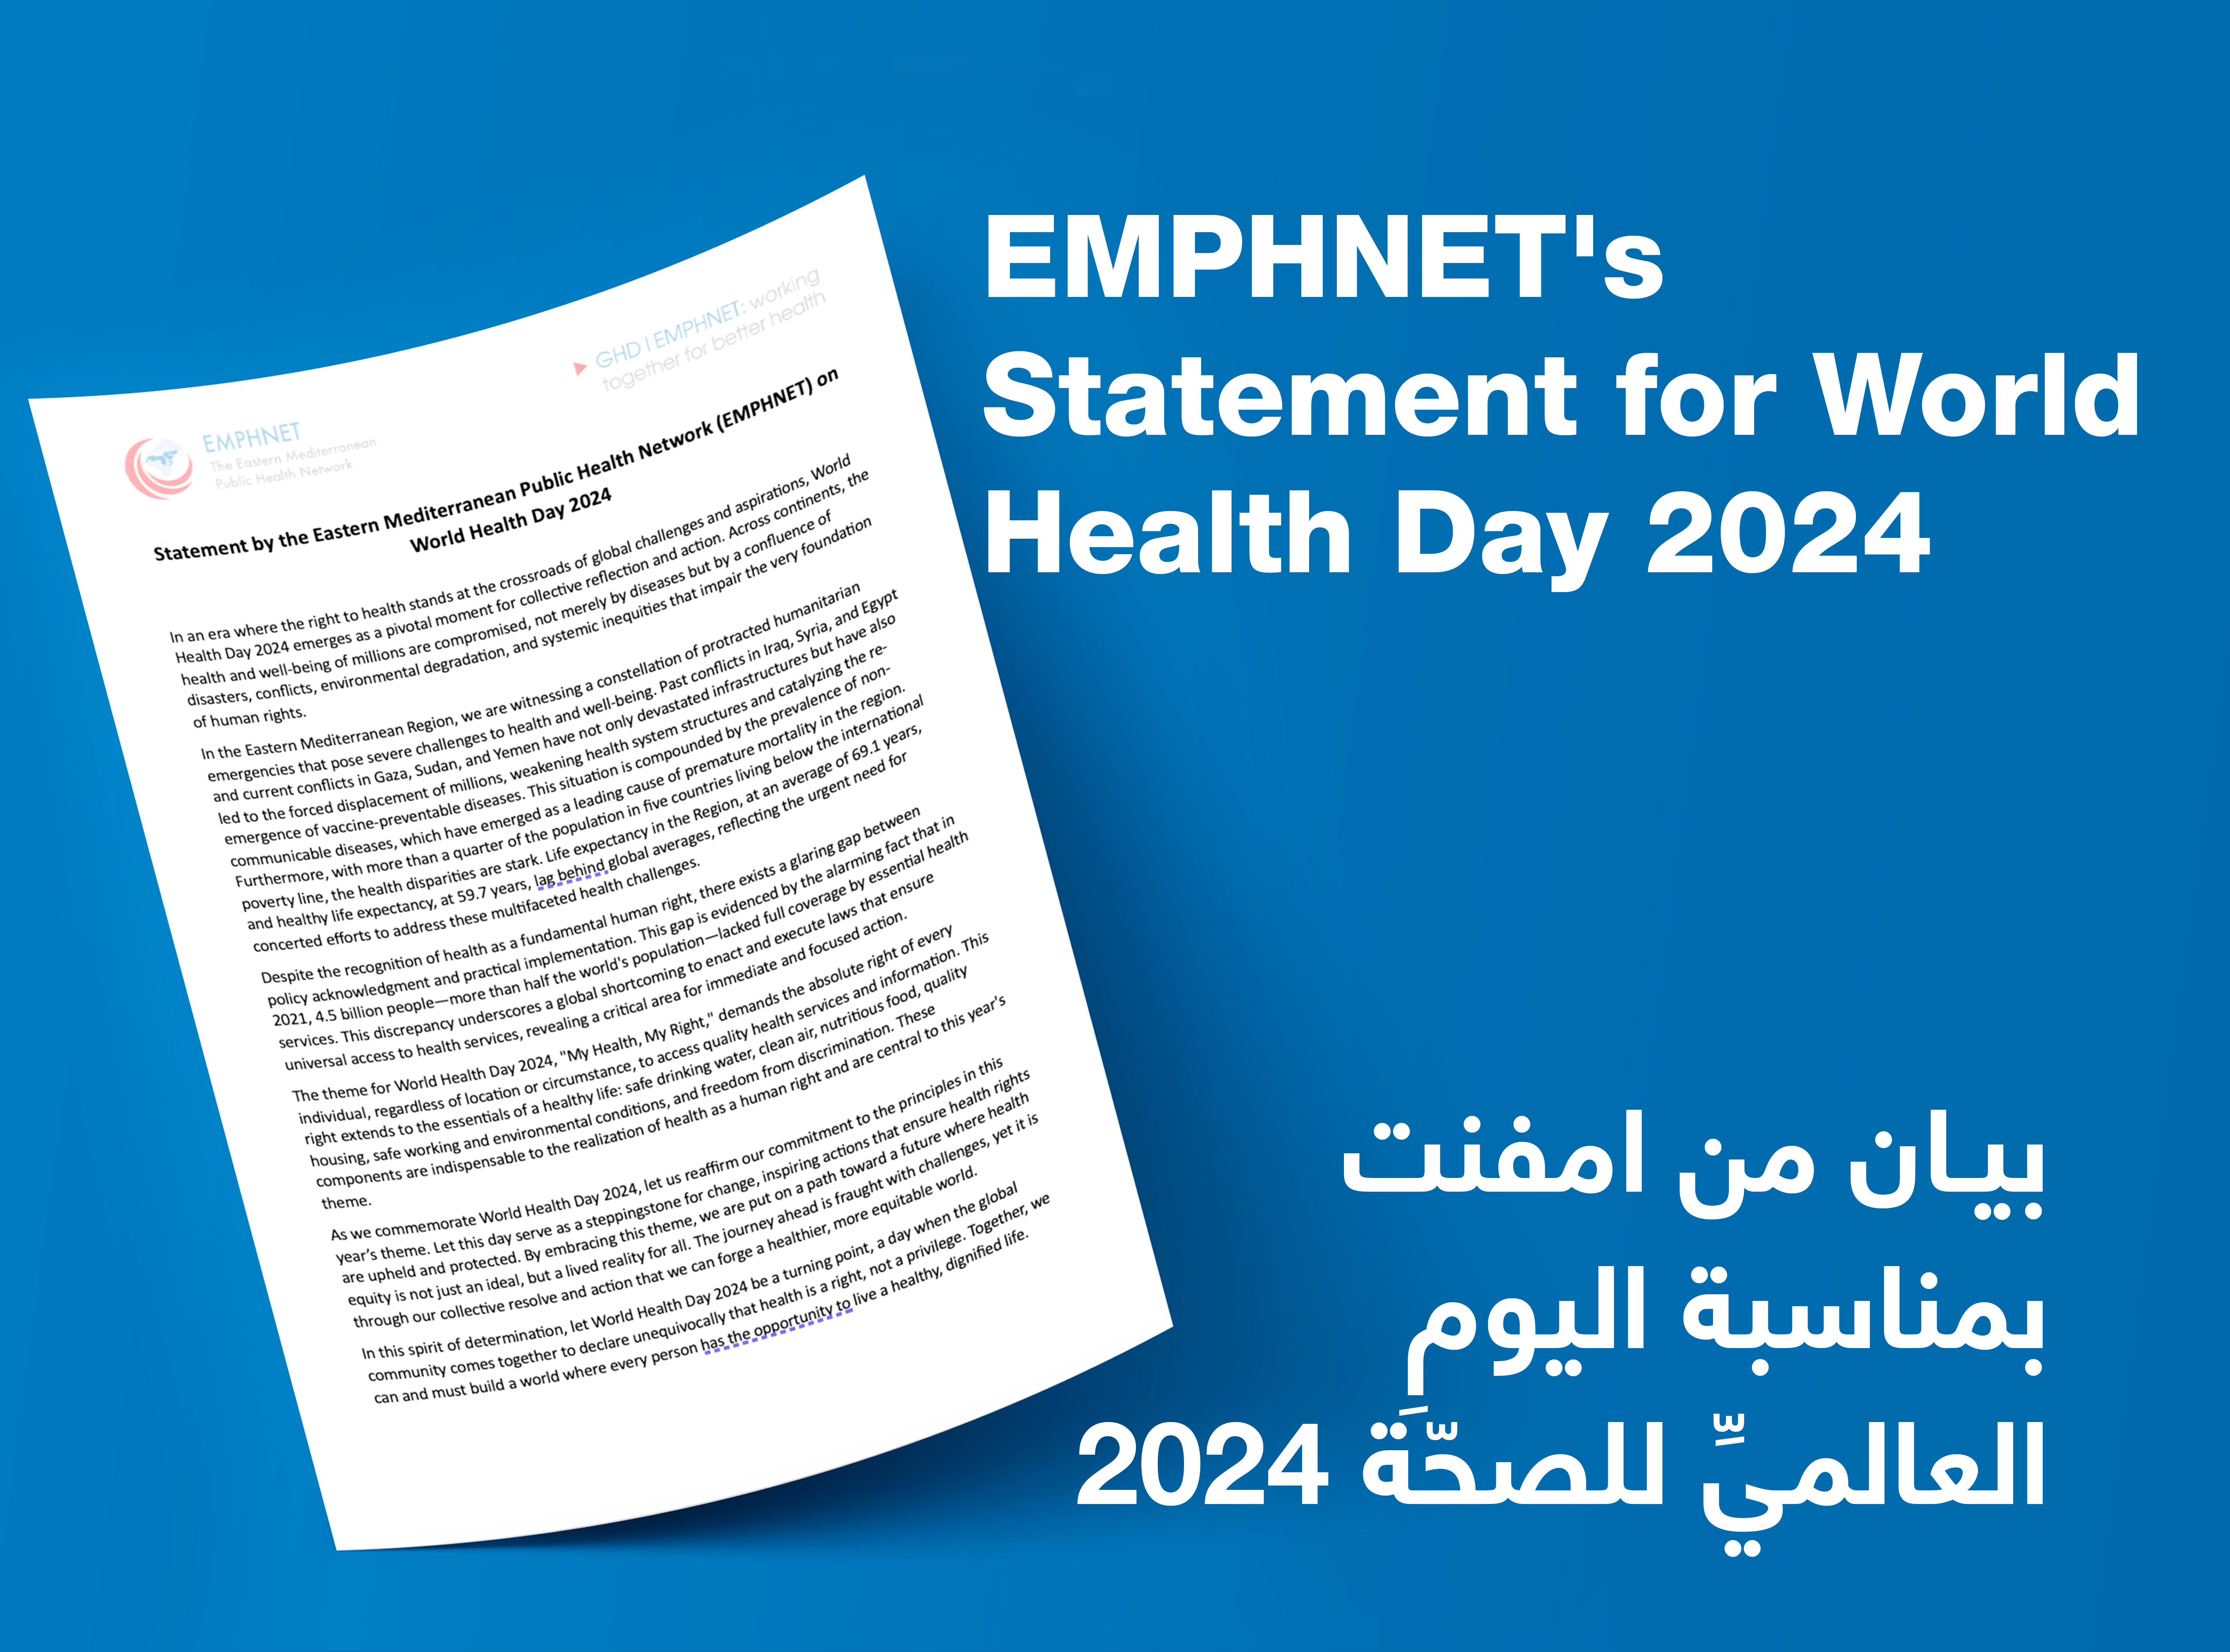 بيان من الشبكة الشرق أوسطية للصحة المجتمعية (امفنت) بمناسبة اليومِ العالميِّ للصحّة 2024: مواجهةُ التحدياتِ وتعزيزُ العدالةِ الصحيّةِ